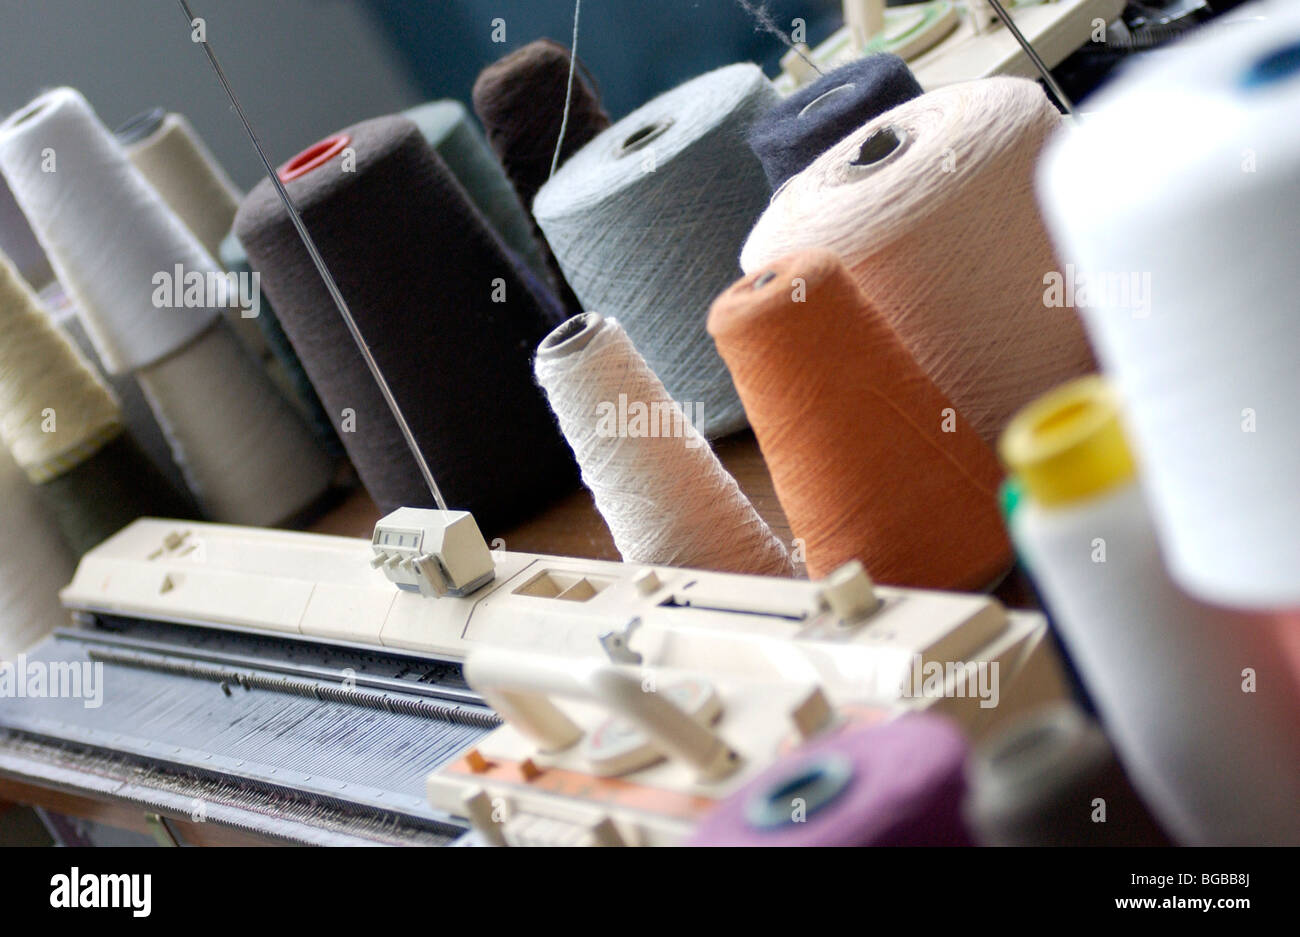 Image libre photo de bobines de coton robe de décideurs dans le commerce de chiffon London UK Banque D'Images